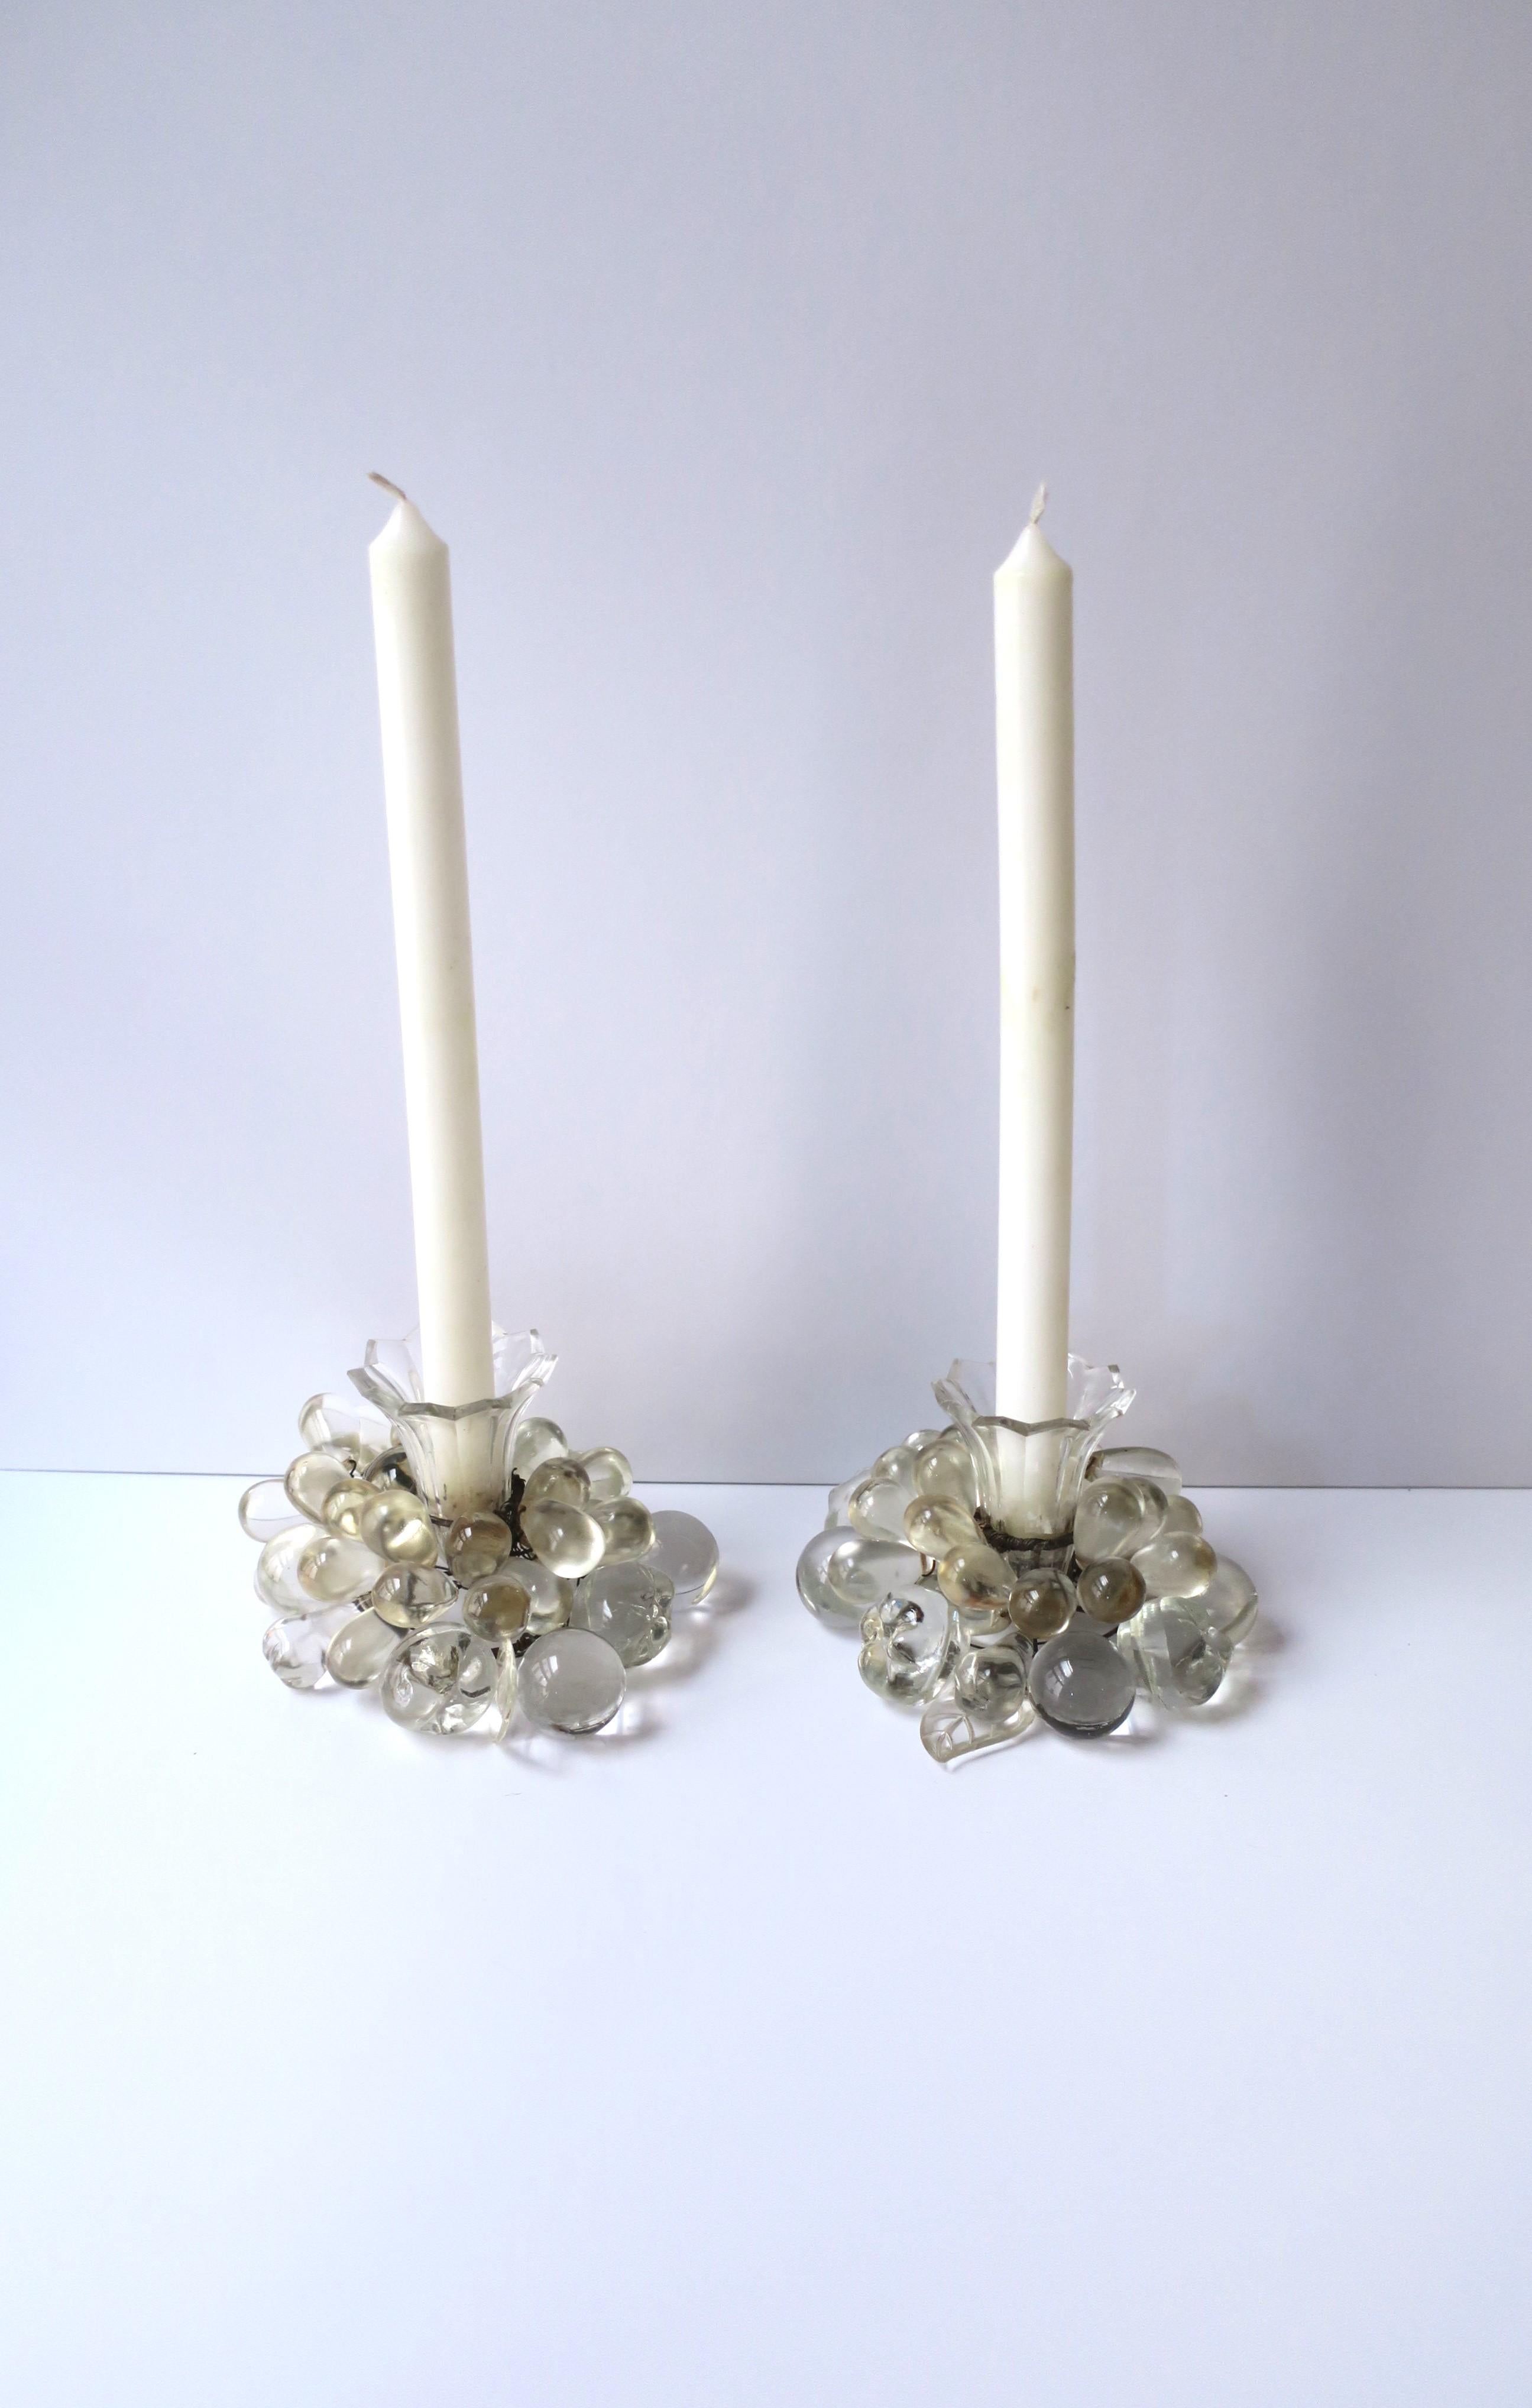 Ein Paar Kerzenhalter aus Kristall mit Früchten und Blättern, Art Deco, frühes 20. Jahrhundert, Tschechoslowakei. Das Paar besteht aus Kristalltrauben, anderen Früchten und Blättern, mit Kerzenhalter aus geschliffenem Kristall. Ein schönes Set zum